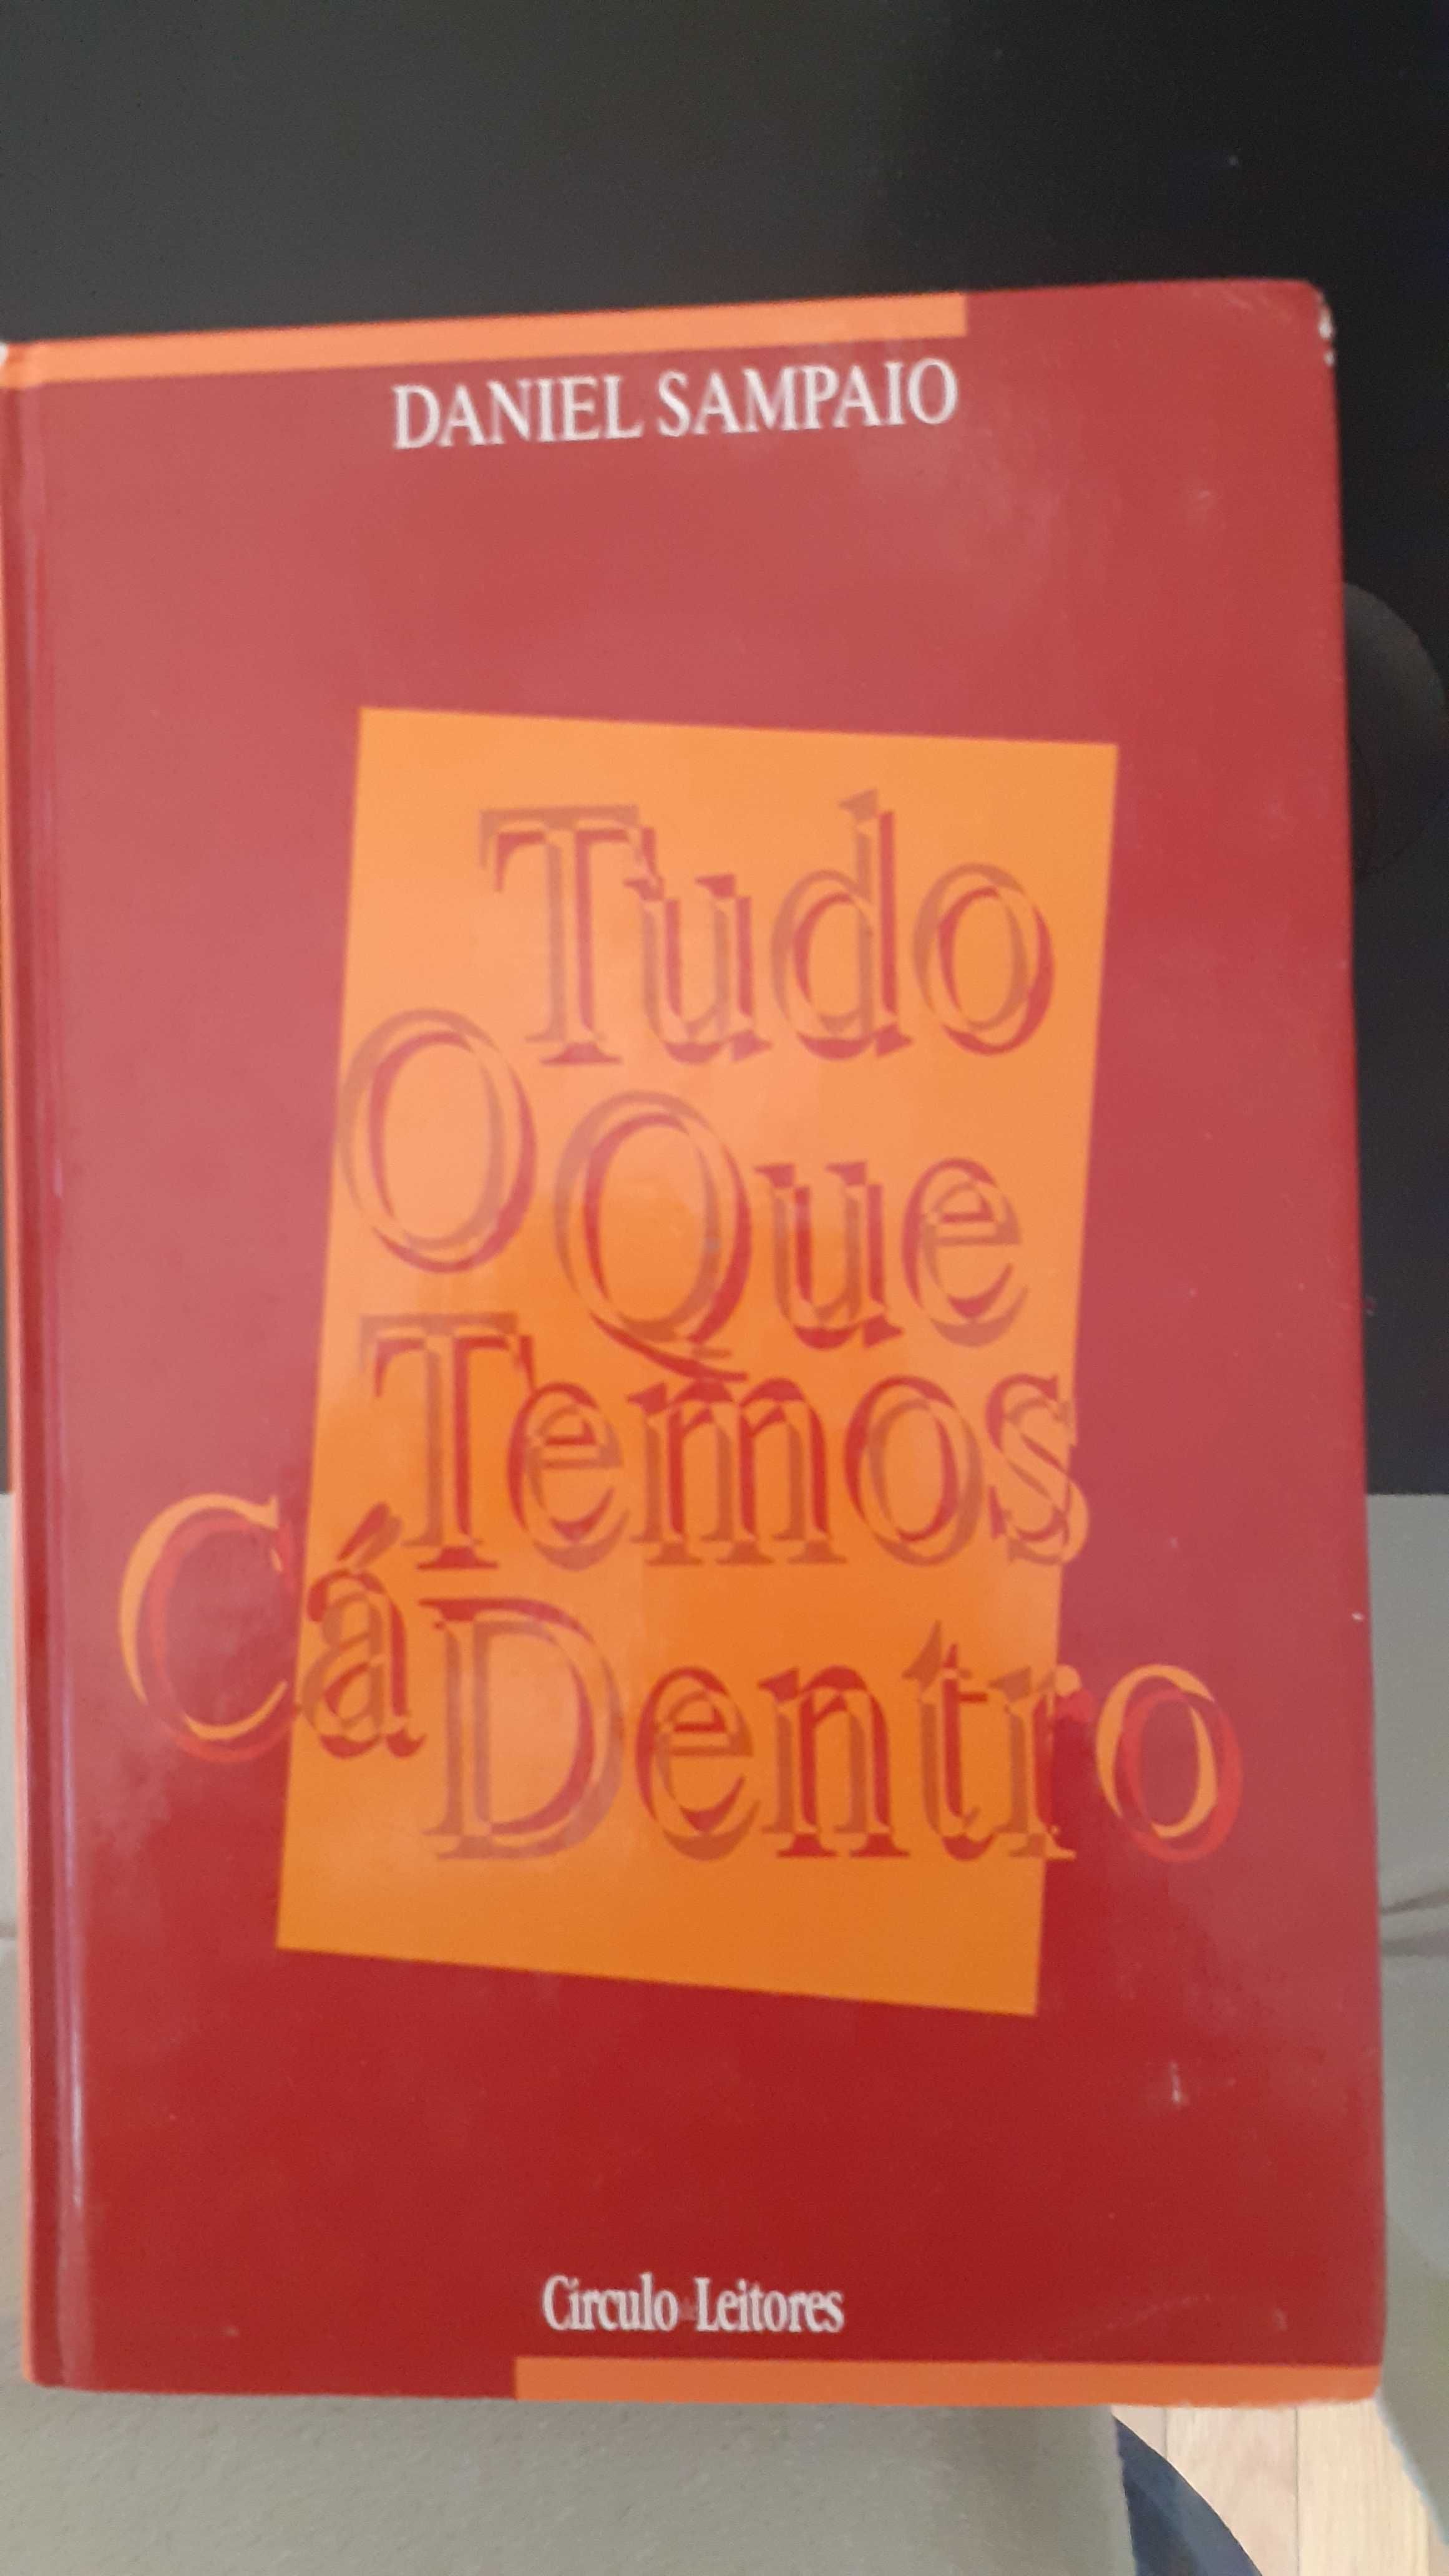 Livros Tiago Rebelo, Daniel Sampaio e Margarida Rebelo Pinto